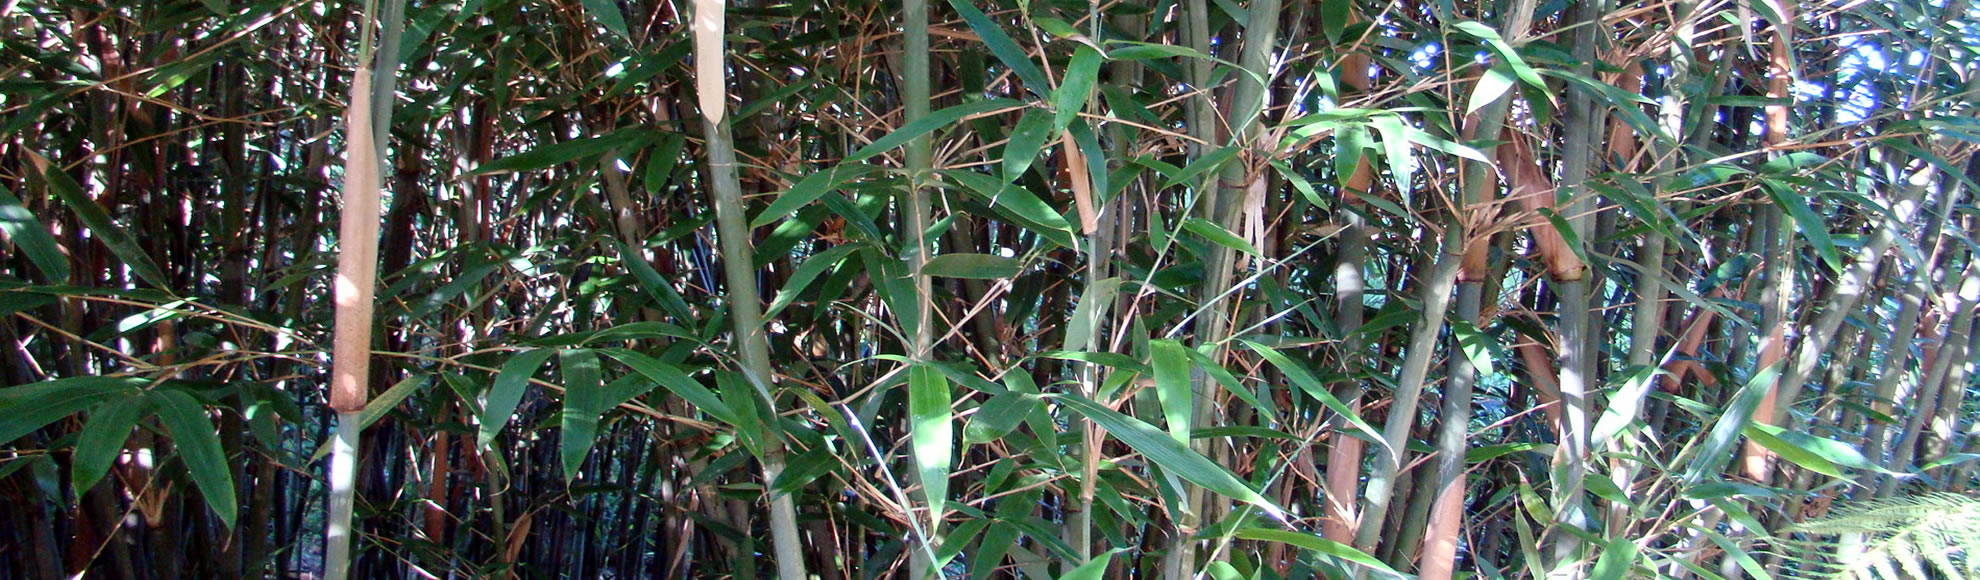 Bamboekwekerij